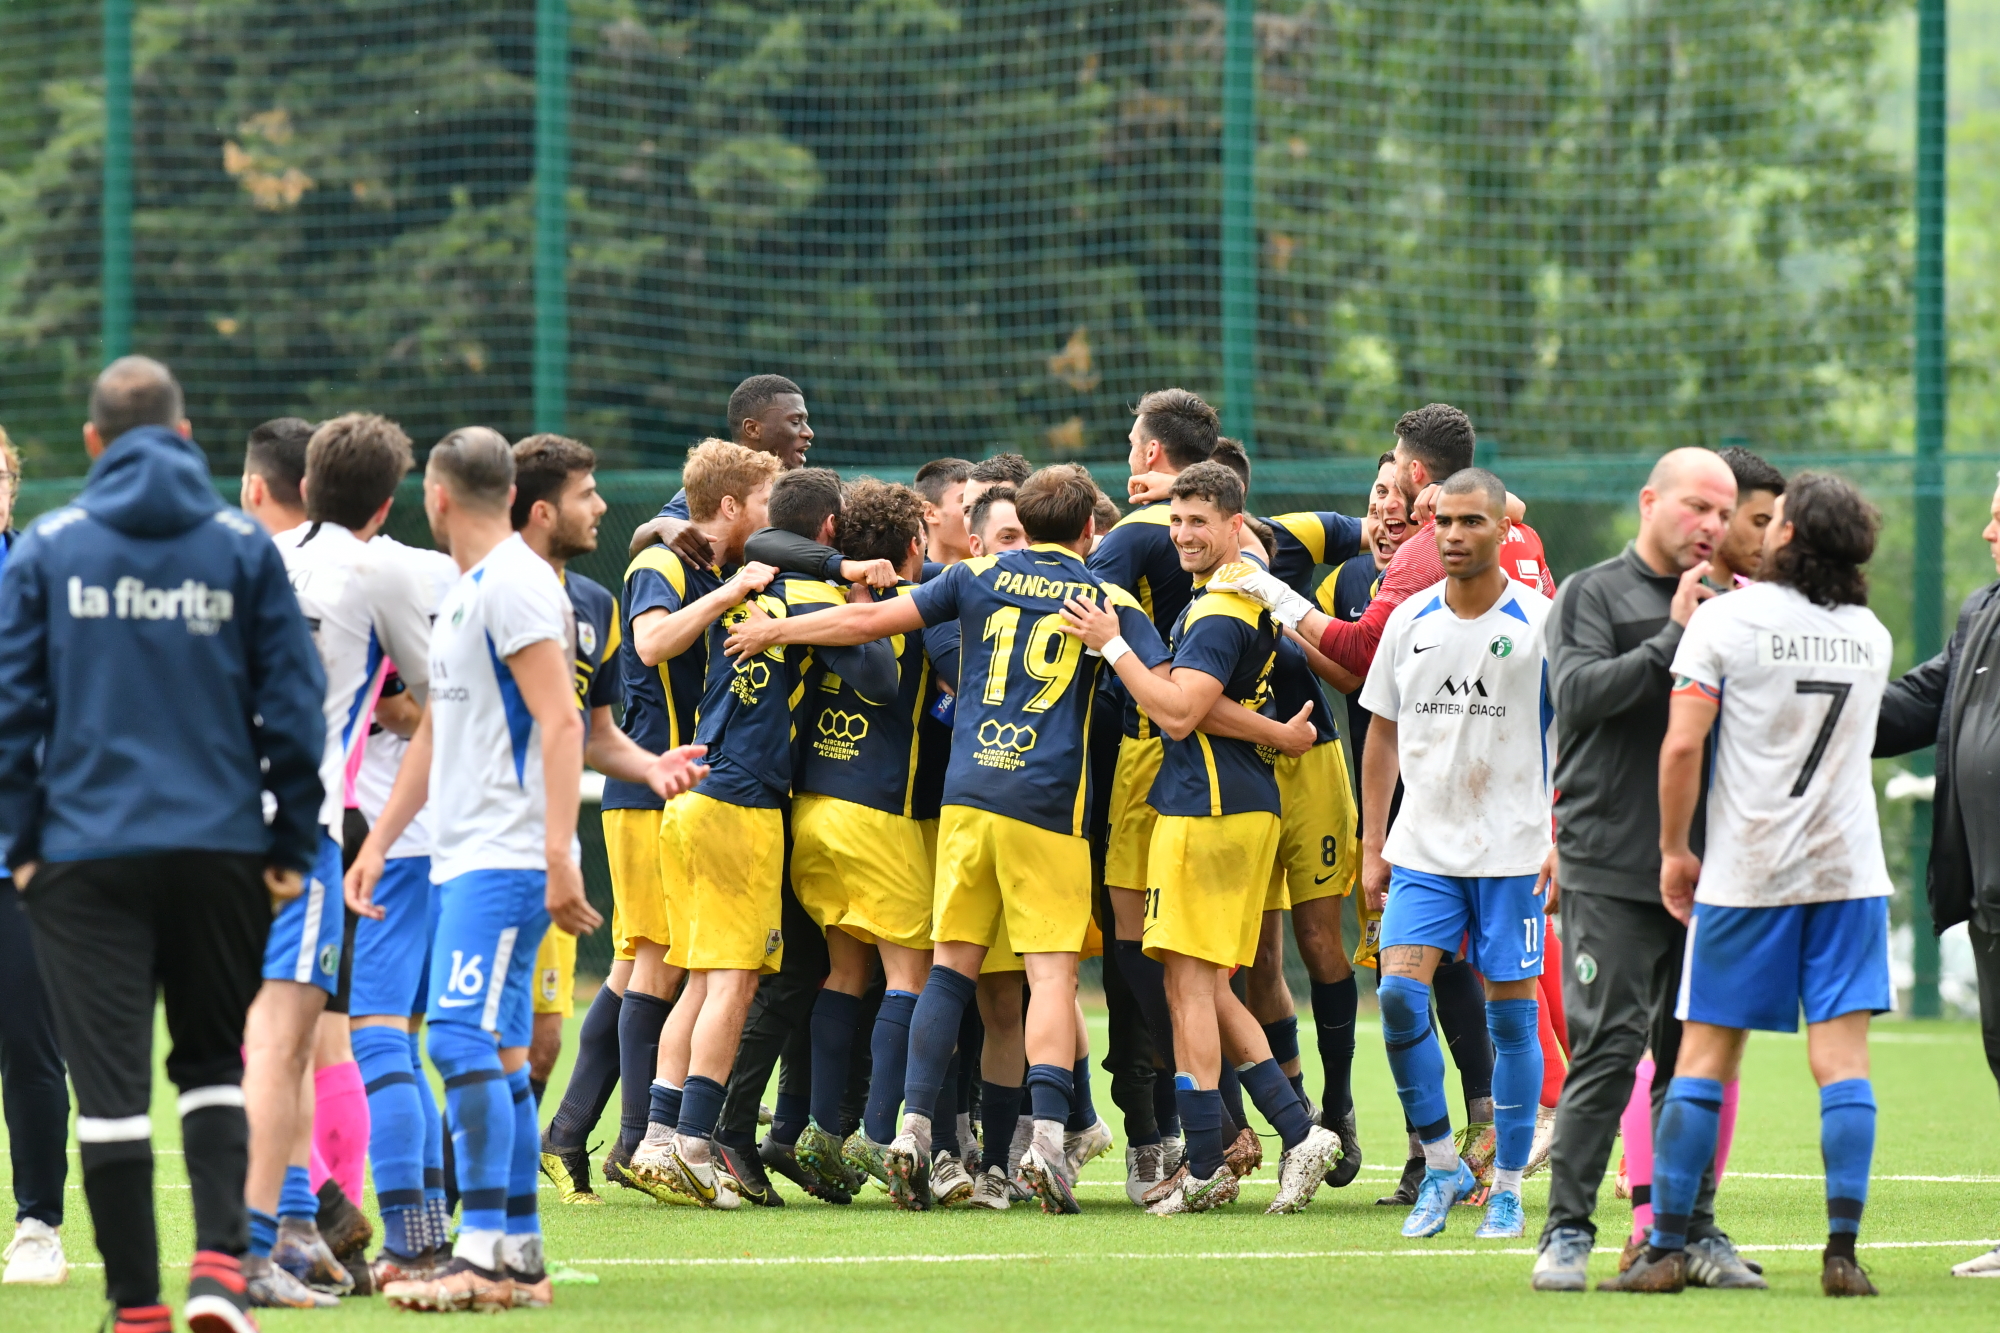 San Marino. Campionato di calcio, Russo trascina La Fiorita in finale: battuta una Virtus in dieci nella ripresa